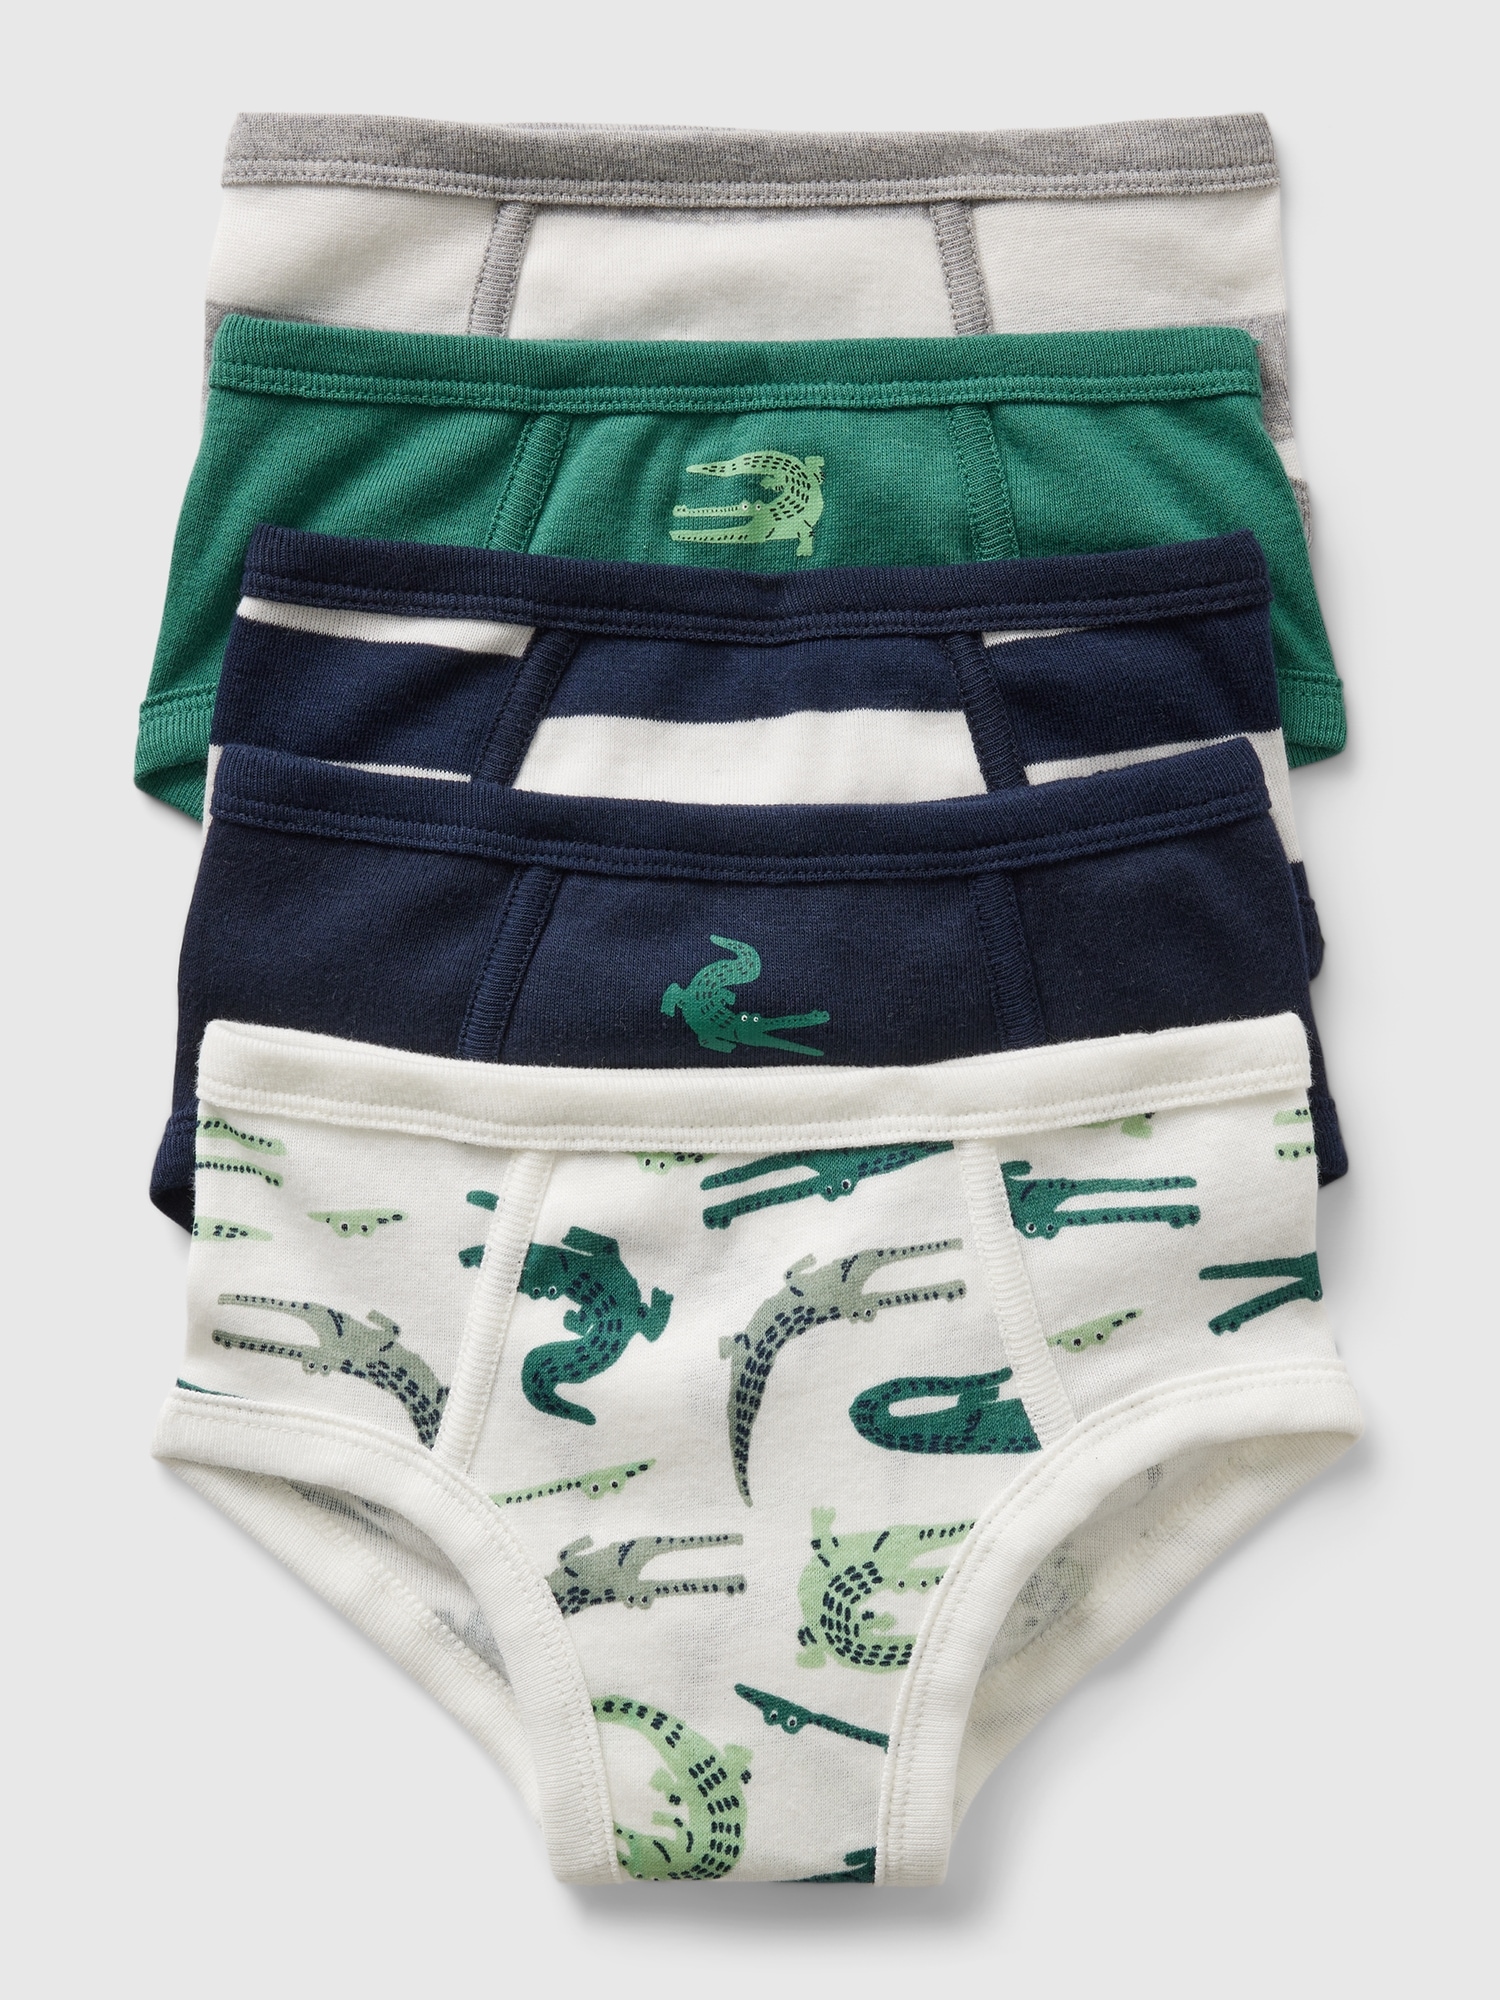  Toddler Boys Underwear, Pure Comfort 100% Cotton